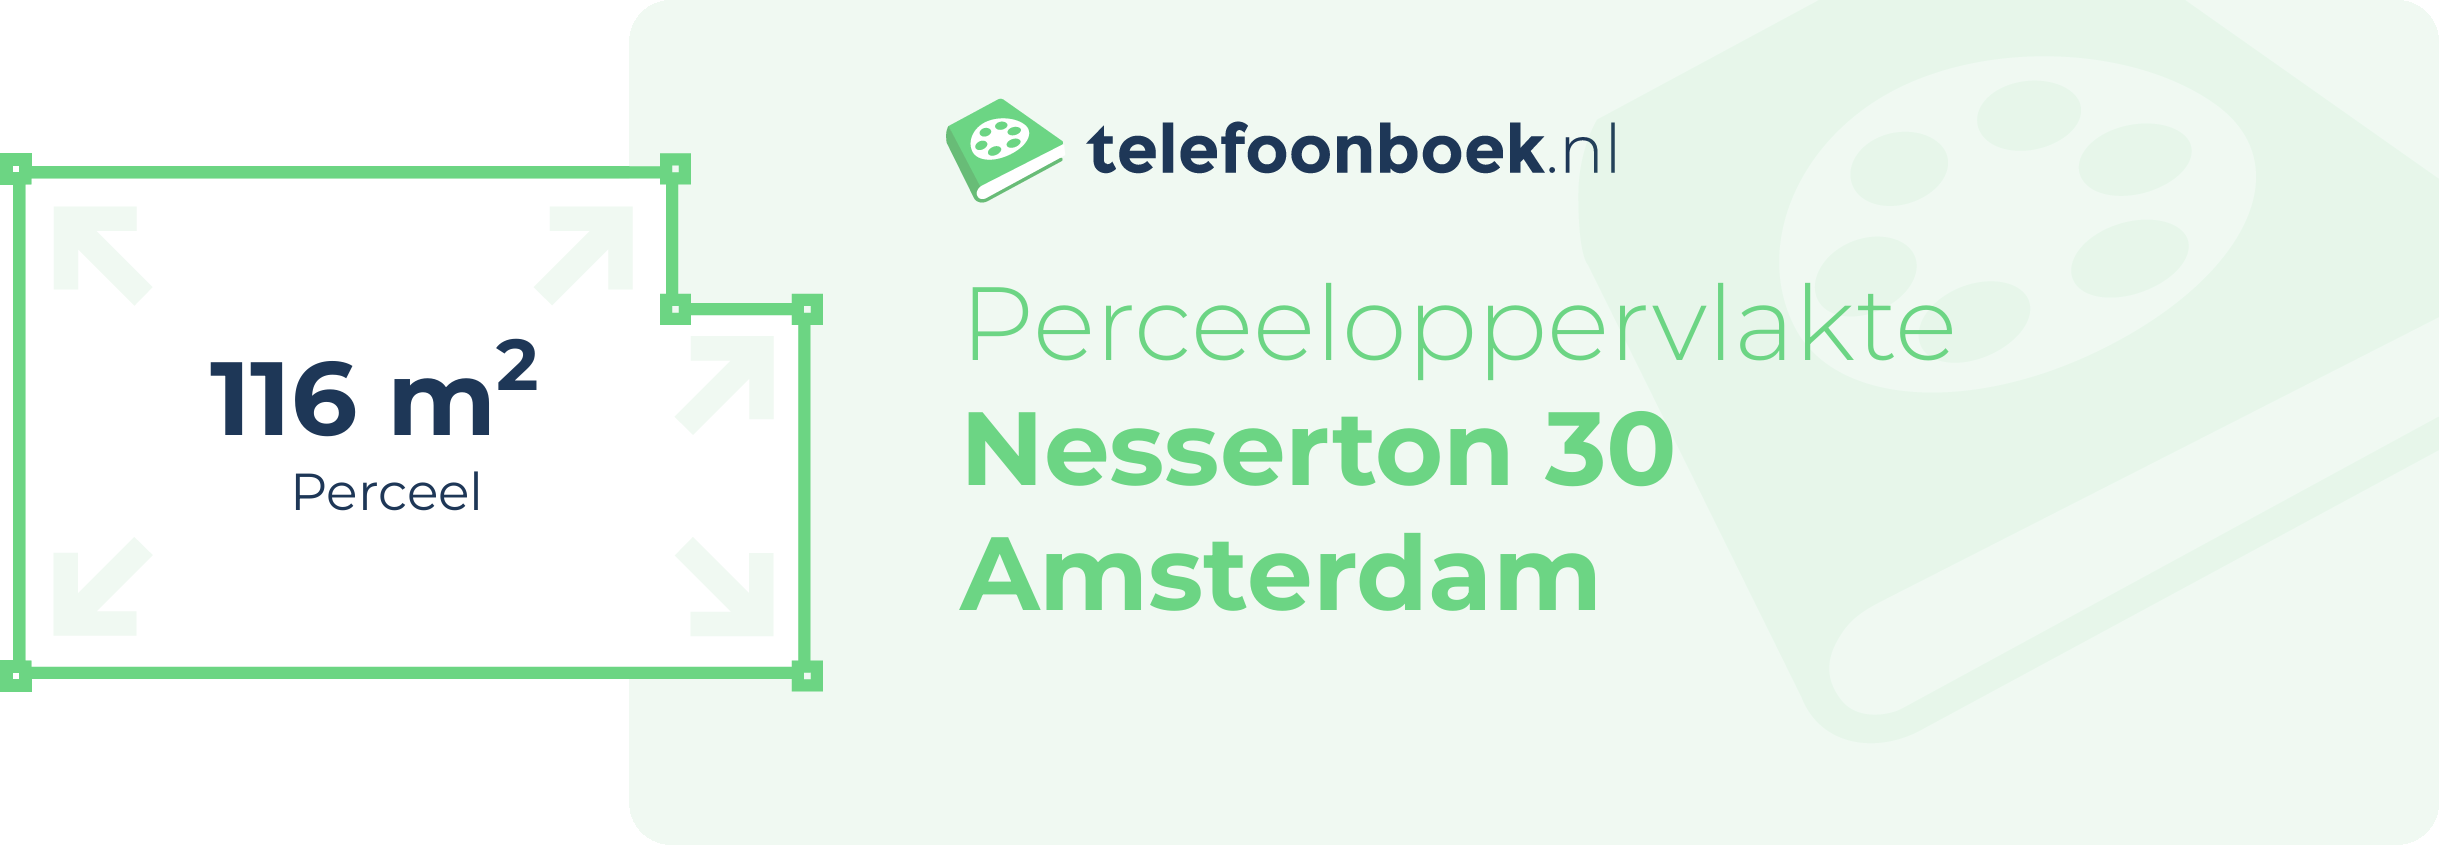 Perceeloppervlakte Nesserton 30 Amsterdam